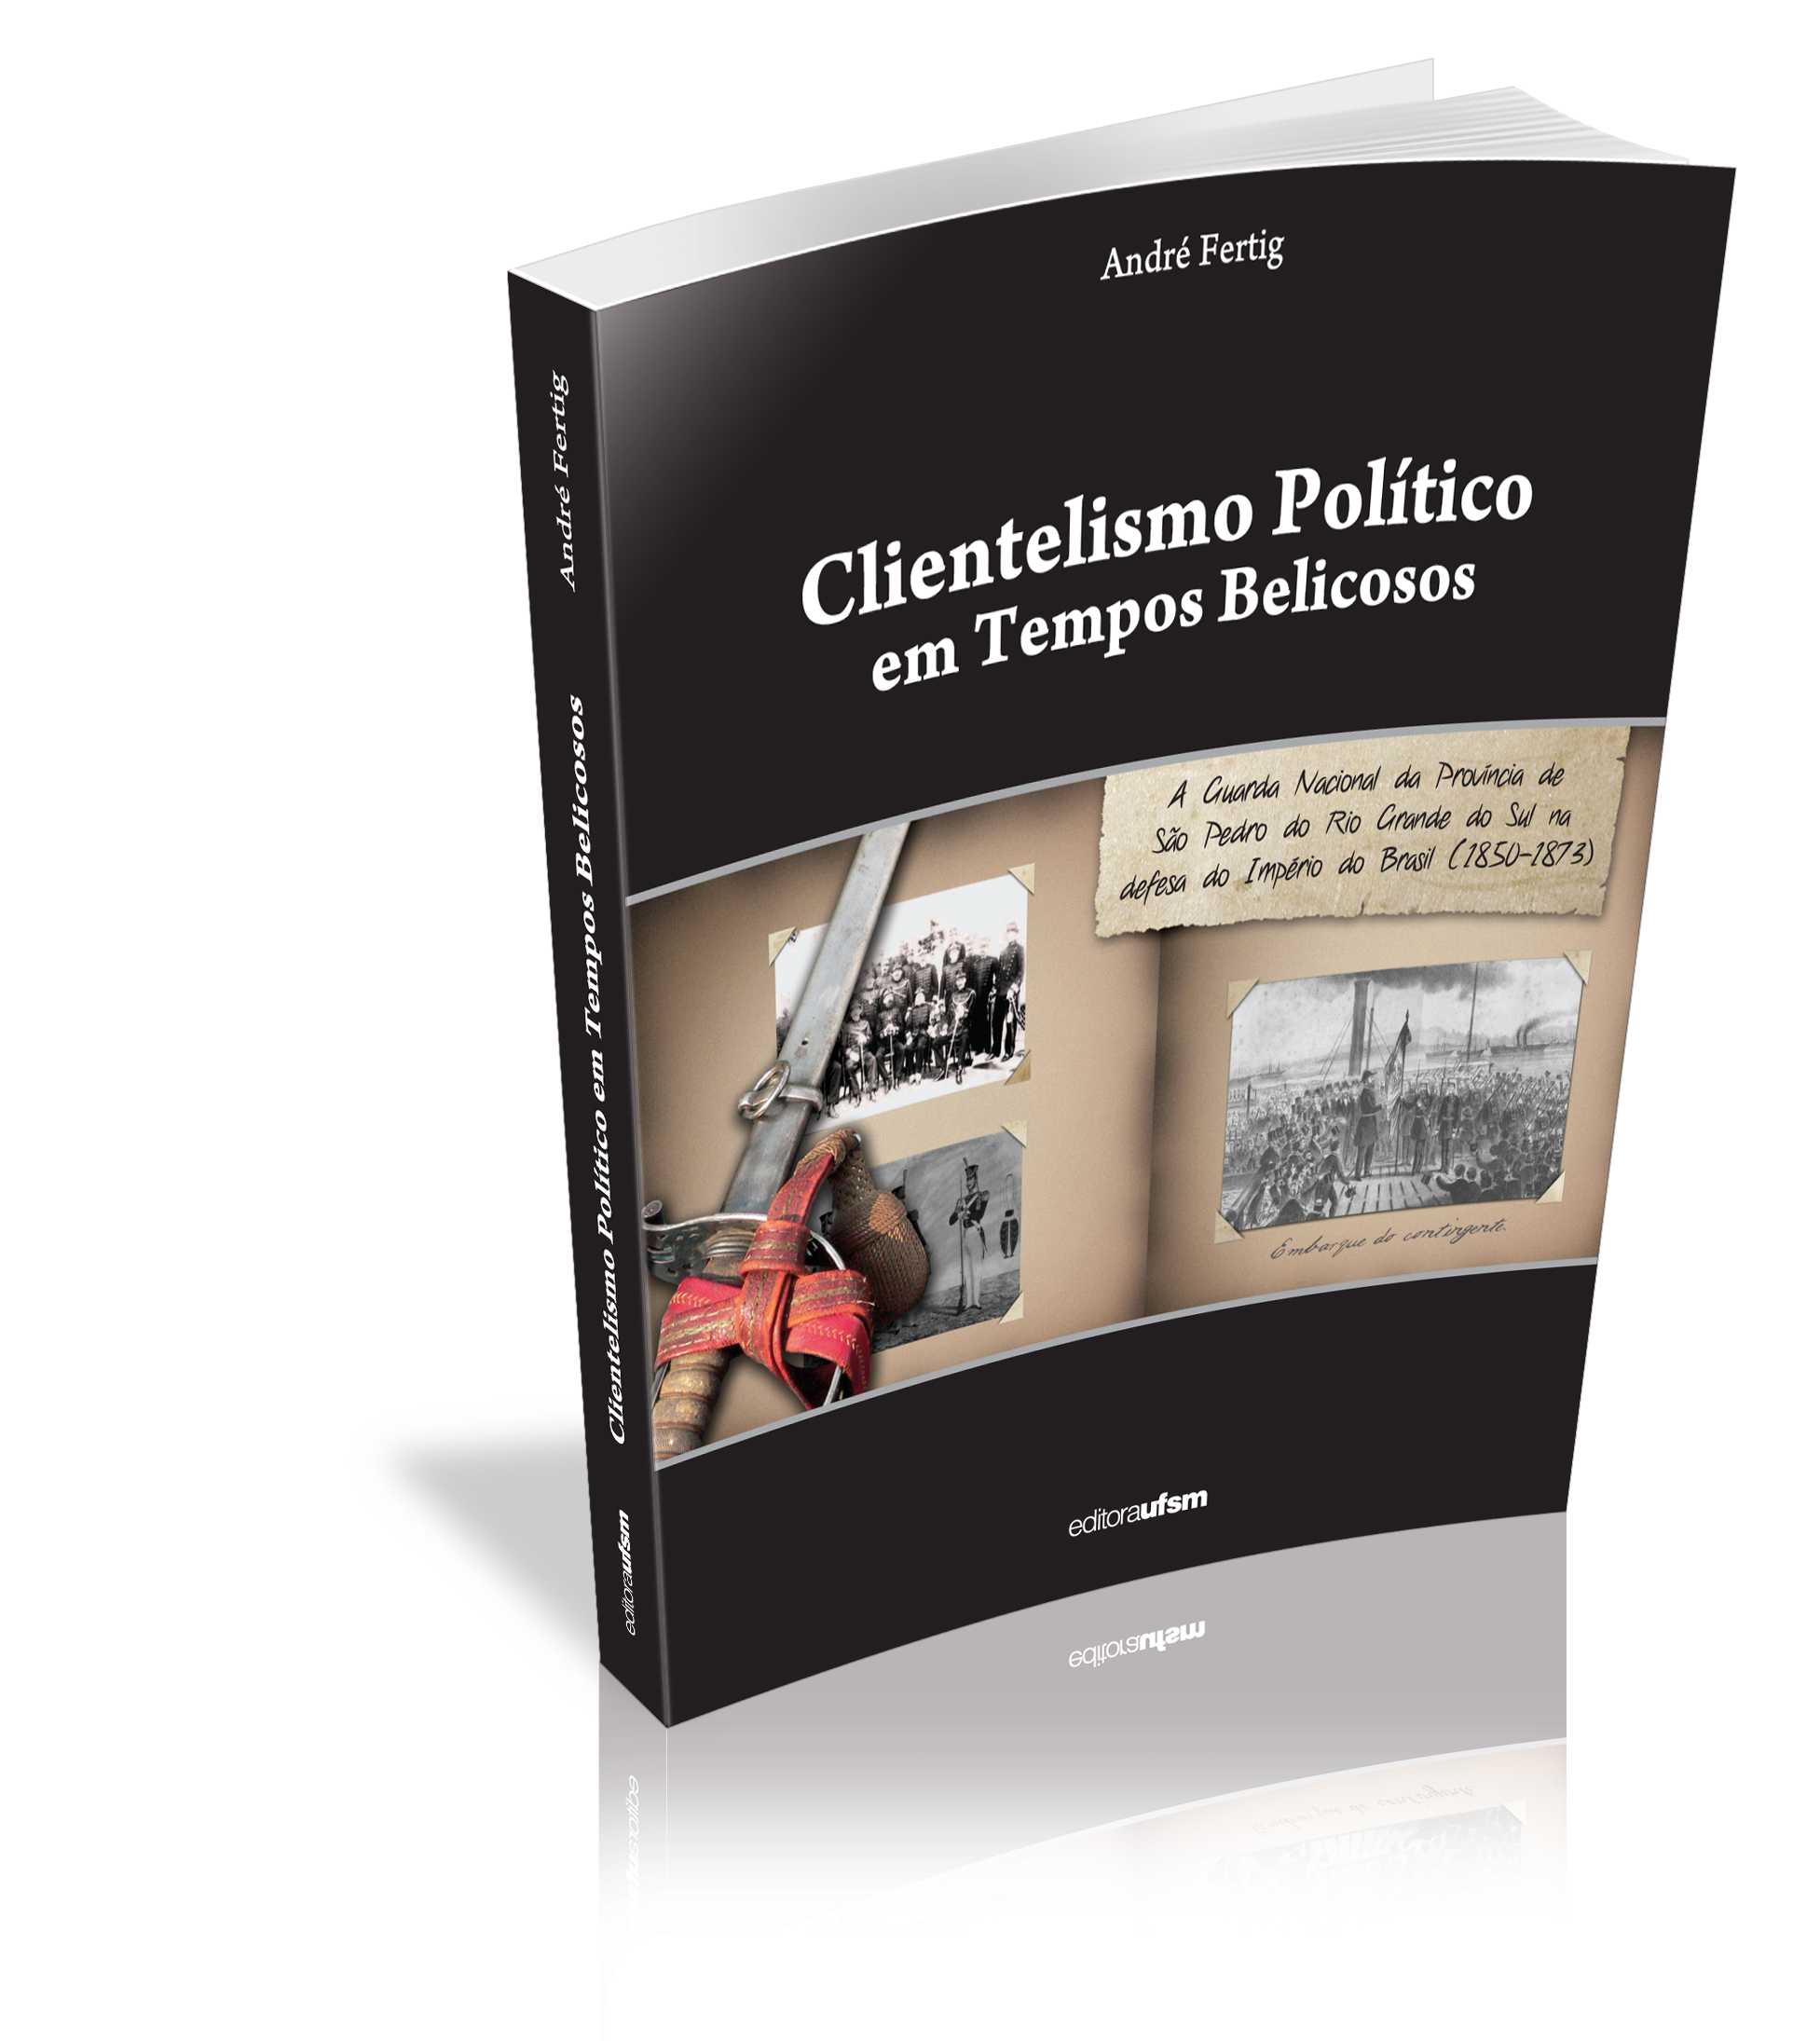 Capa do livro Clientelismo Político em Tempos Belicosos